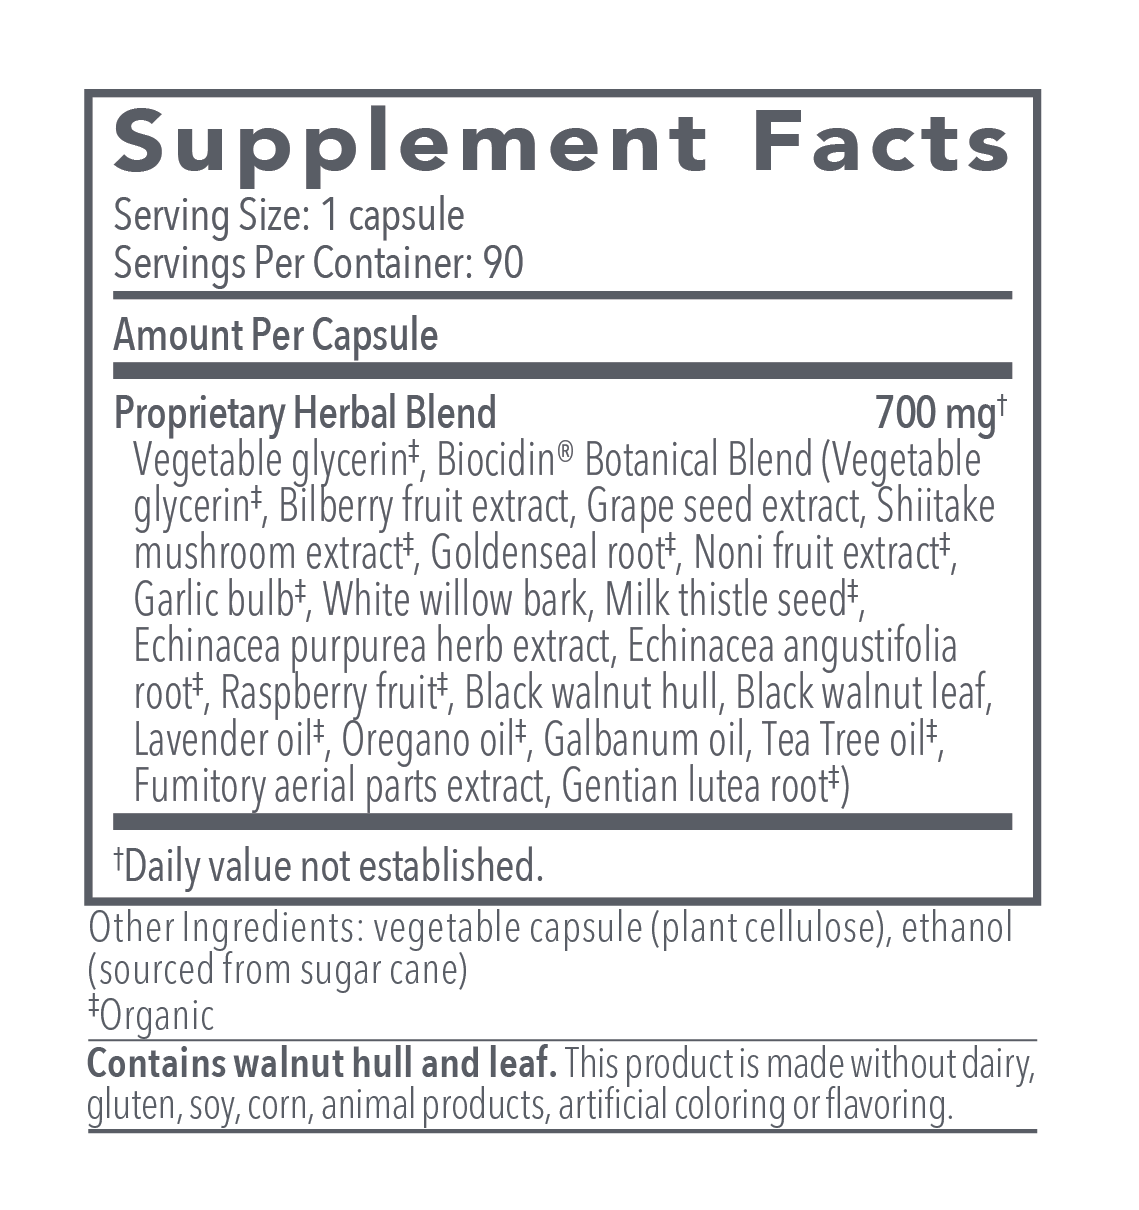 Biocidin® Capsules - Broad-Spectrum Liquid Capsules